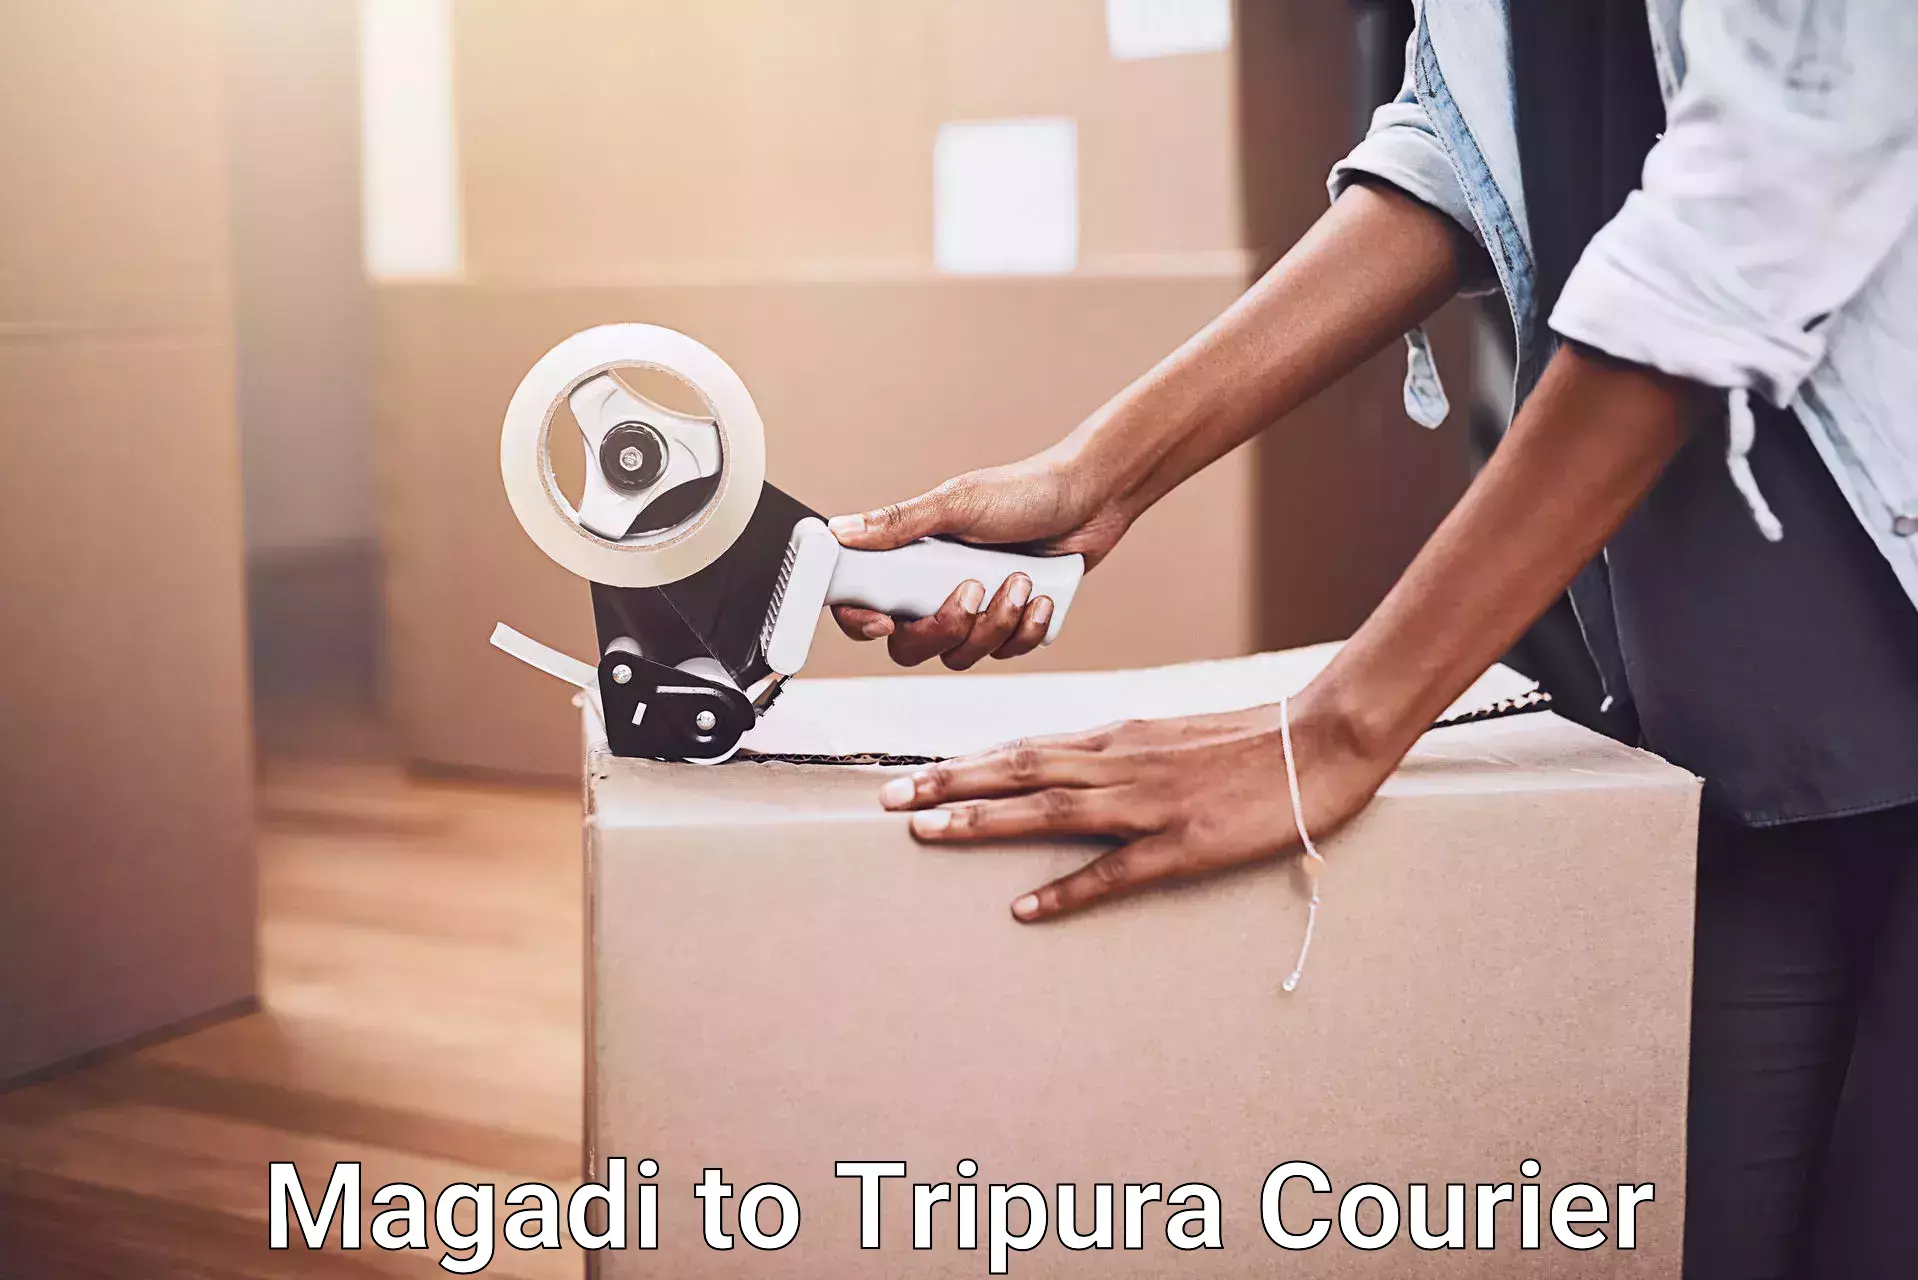 Nationwide furniture transport Magadi to Udaipur Tripura